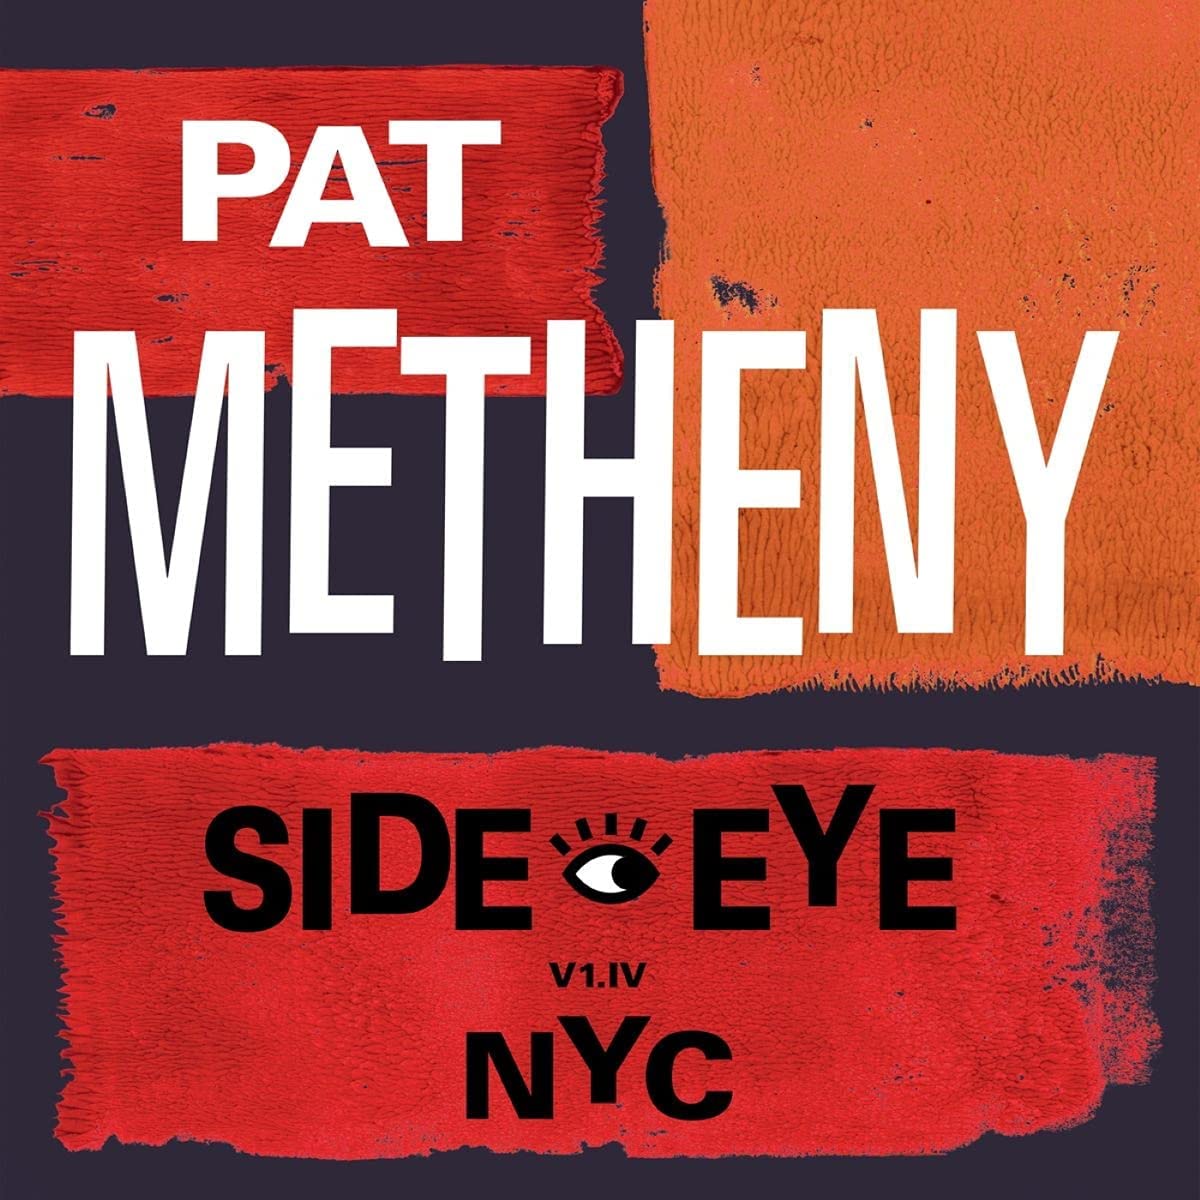 Copertina Vinile 33 giri Side Eye Nyc (V1.iv) [2 LP] di Pat Metheny